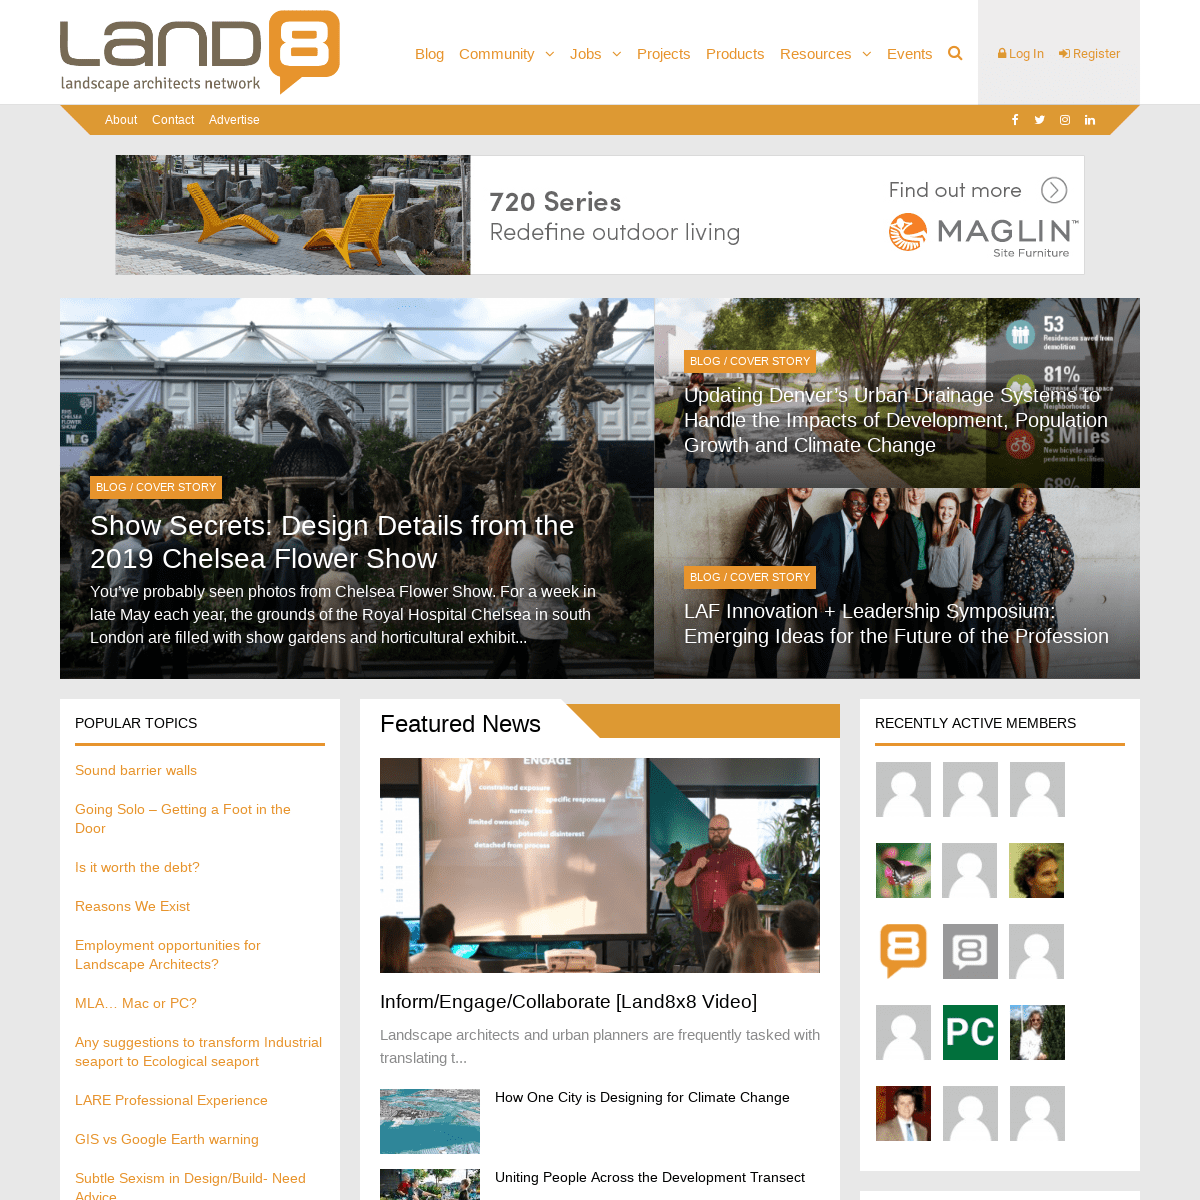 Landscape Architecture for Landscape Architects - Land8